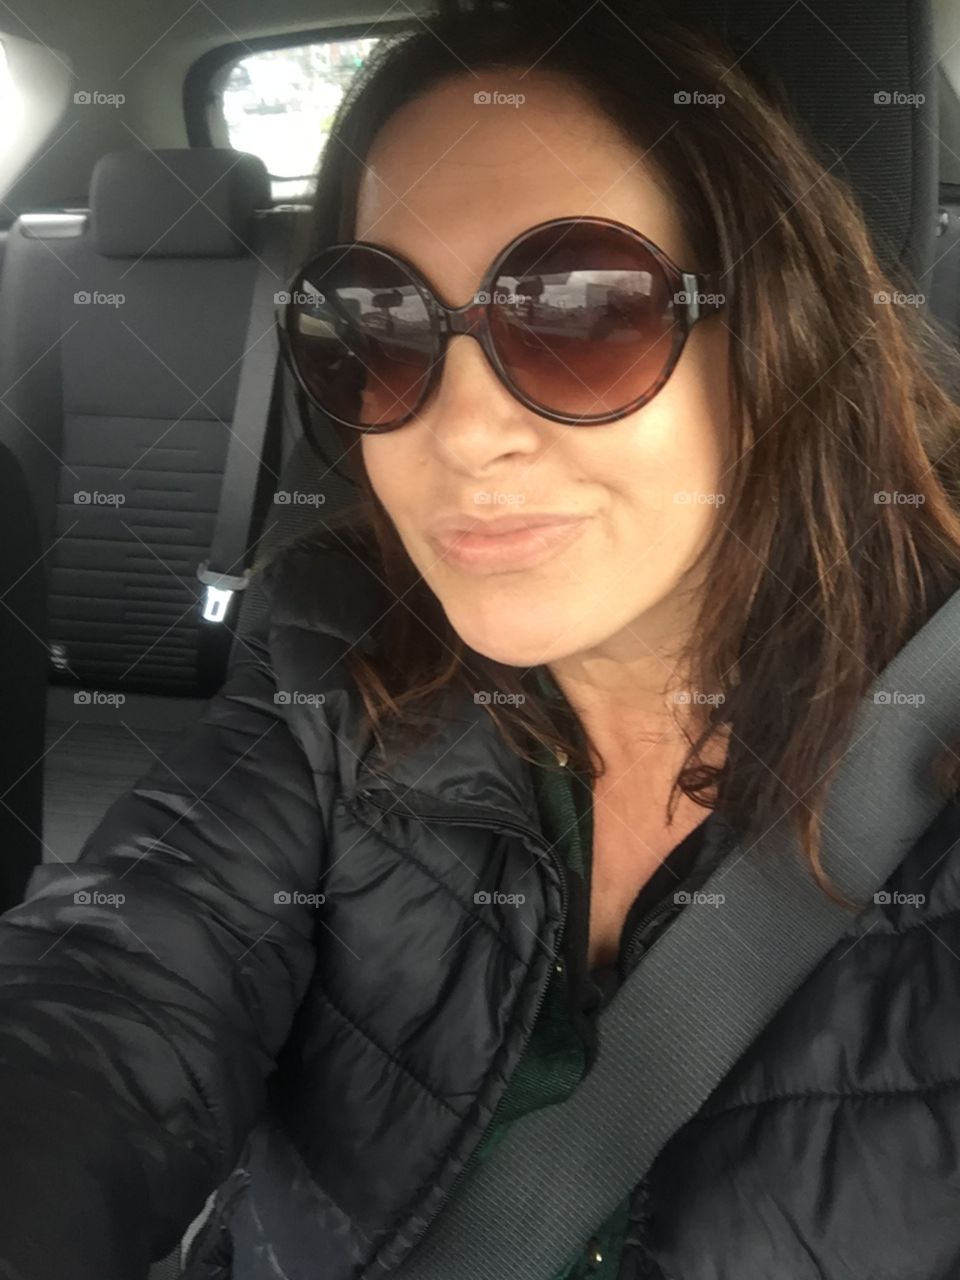 Driving selfie woman 